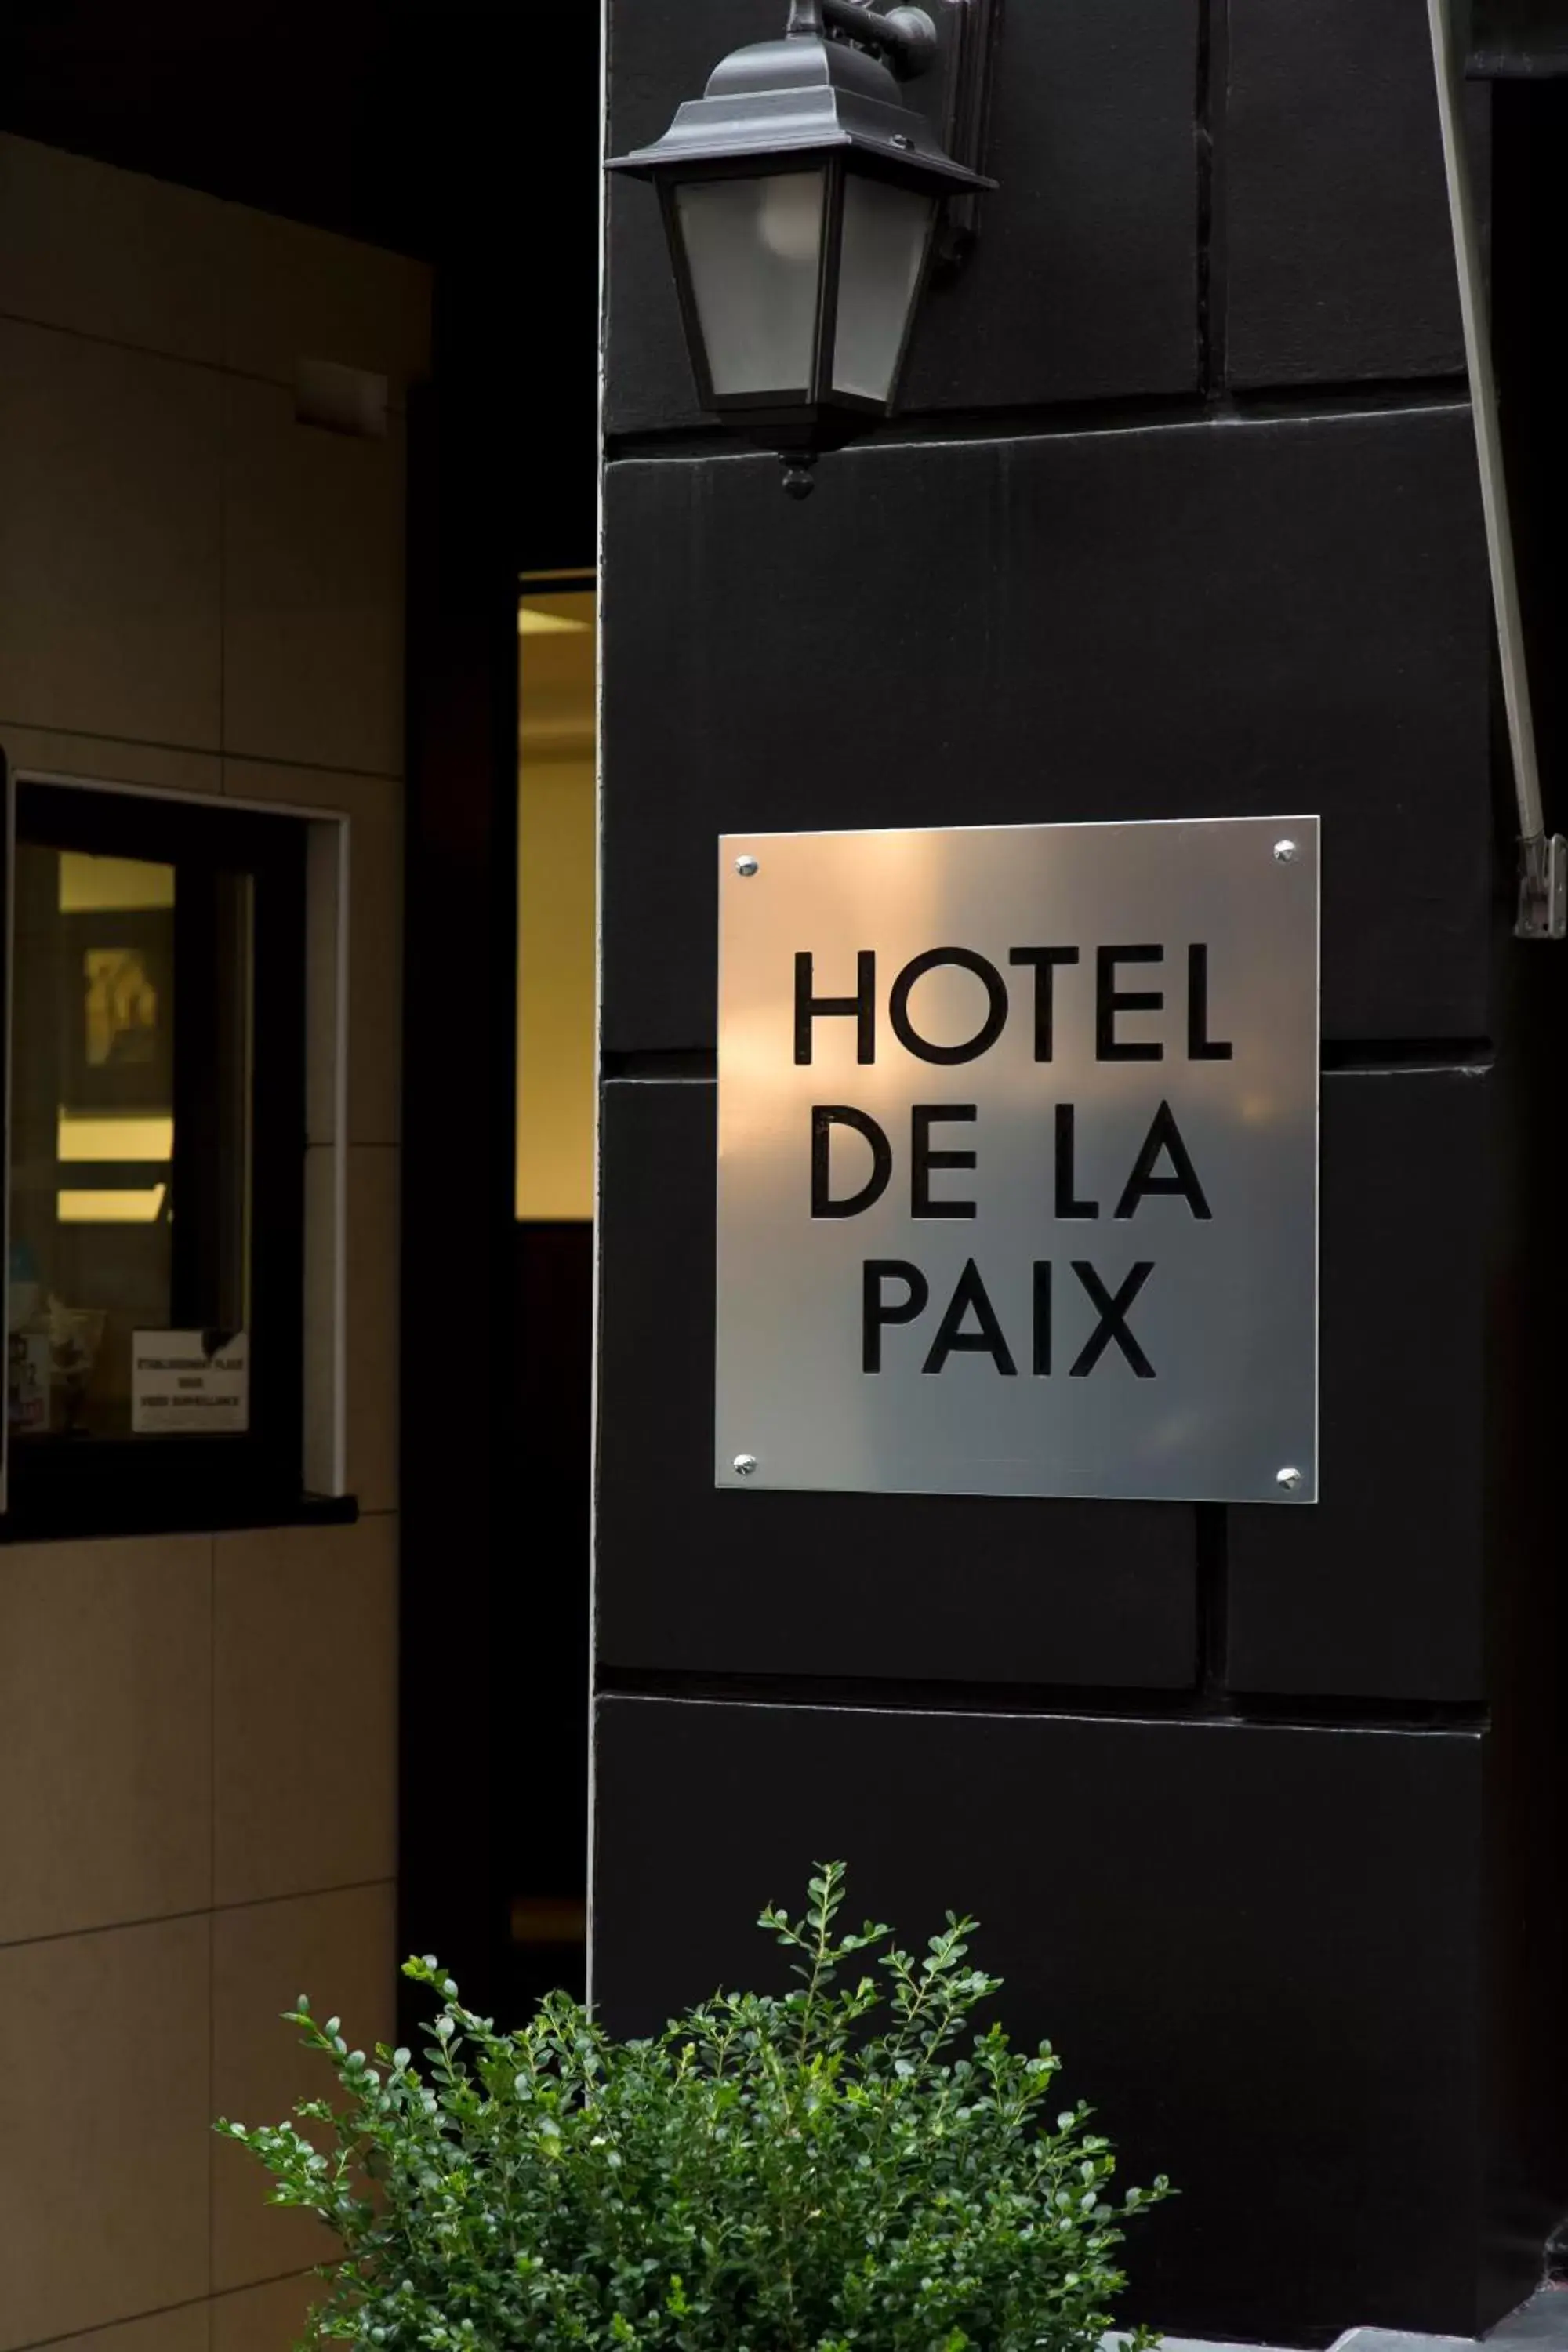 Property logo or sign in Hotel de la Paix Tour Eiffel